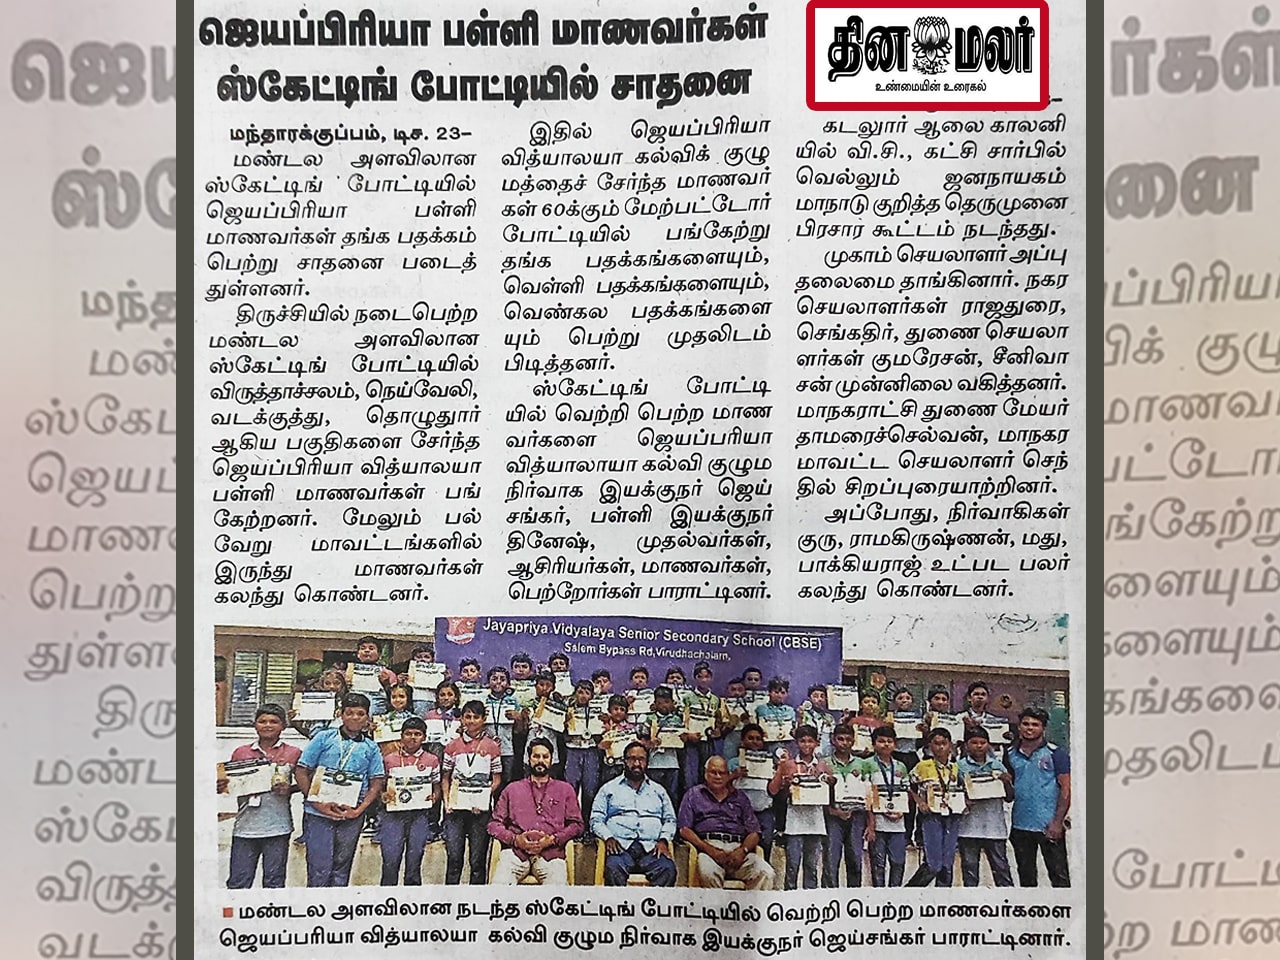 DINAMALAR - Jayapriya Vidyalaya Soars to Gold! Students Shatter Records at Trichy Zonal Skating Competition!